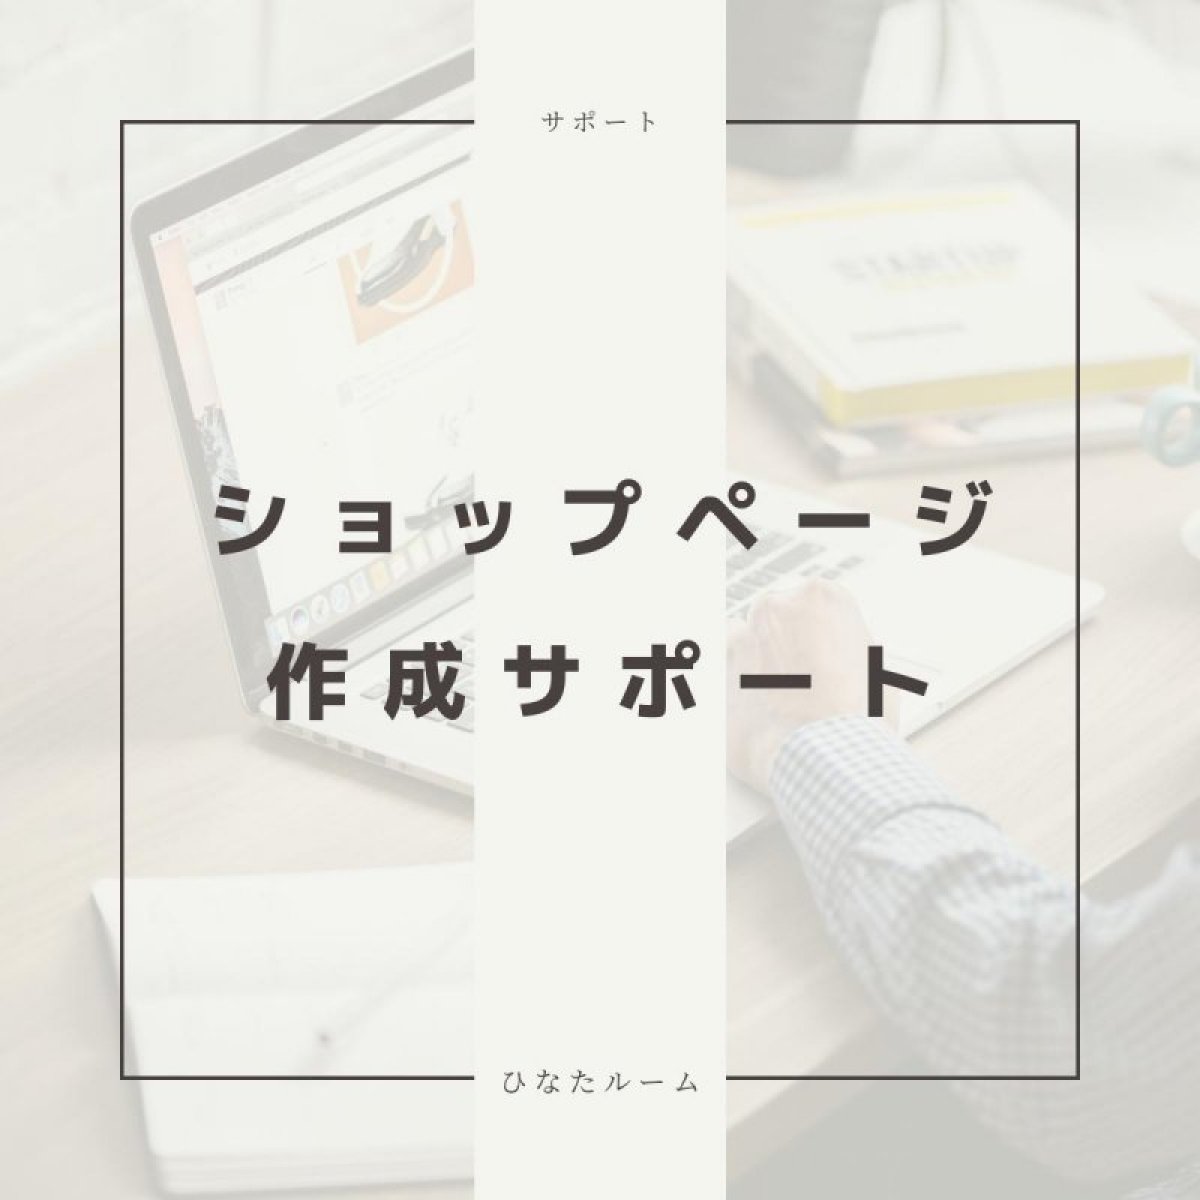 【初回限定お客様専用チケット】ショップページ作成サポート